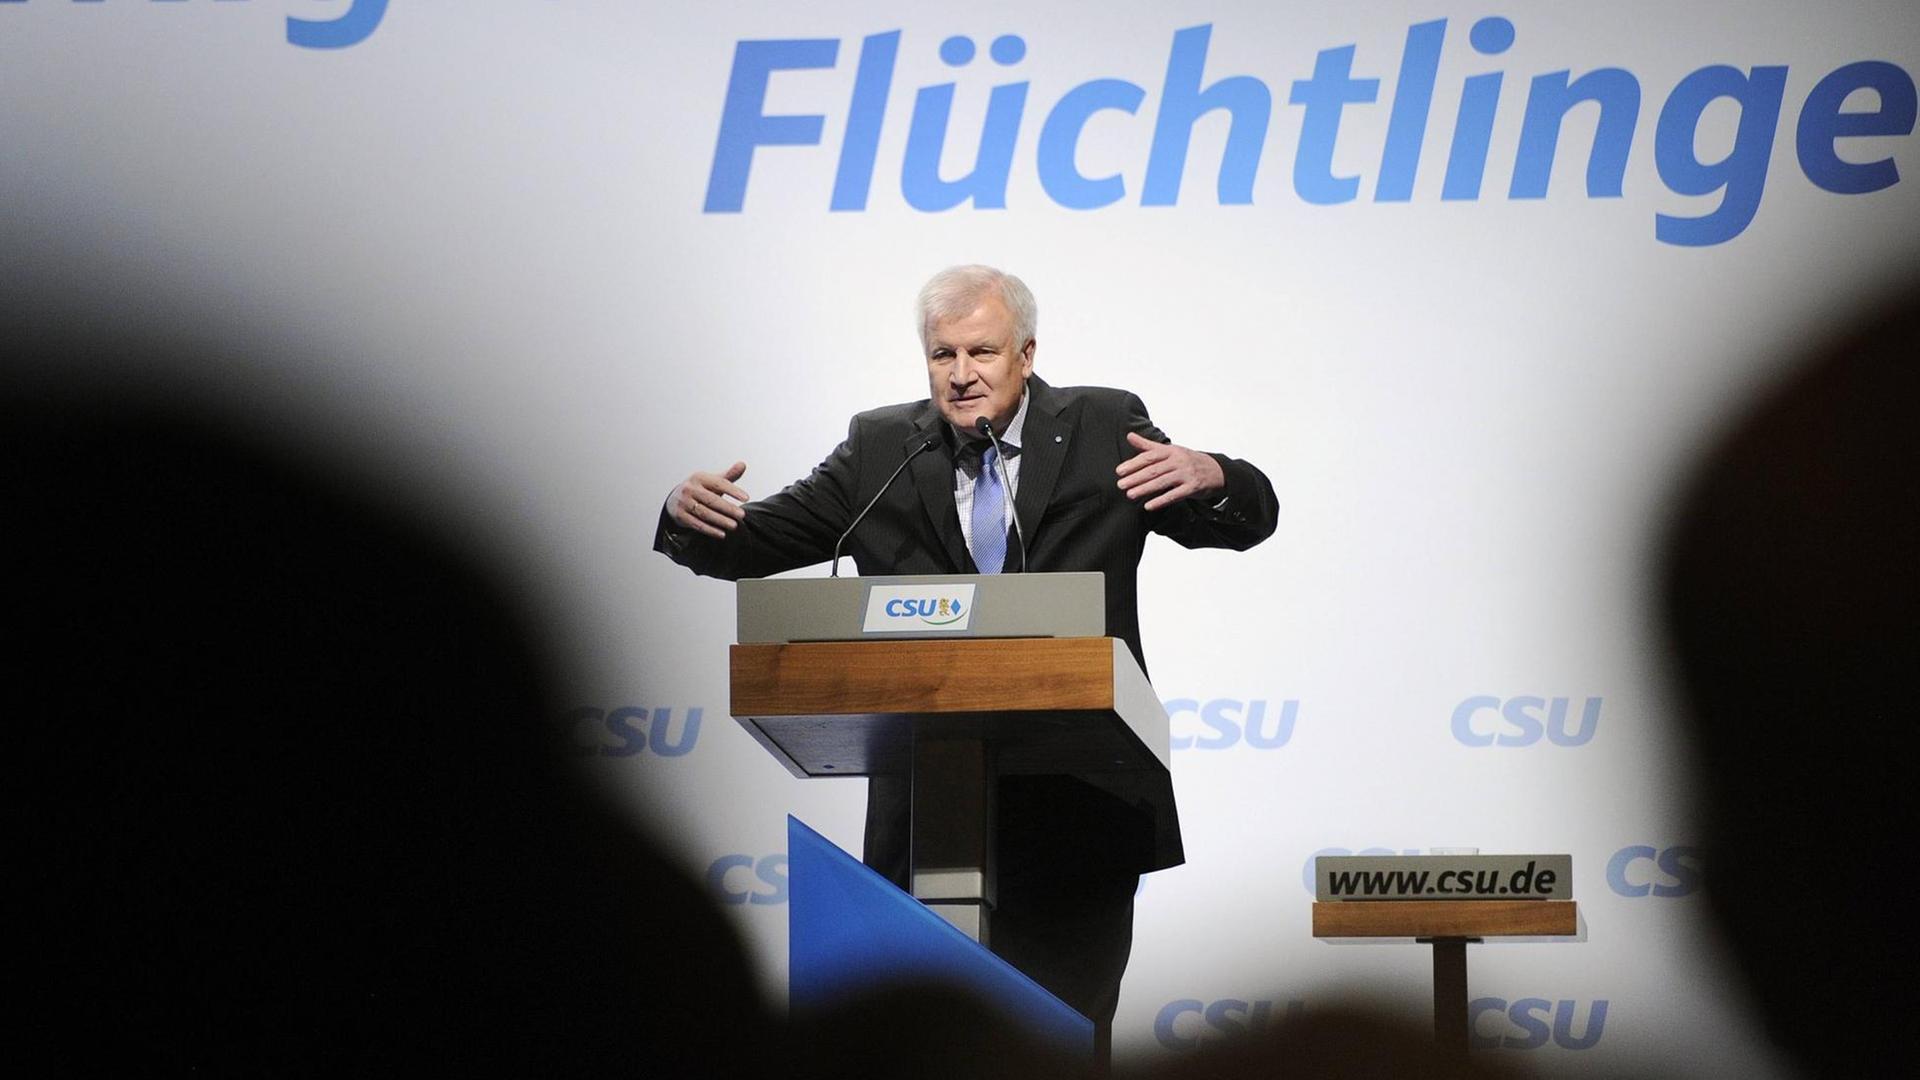 Bayerns Ministerpräsident Horst Seehofer gestikuliert am Rednerpult.